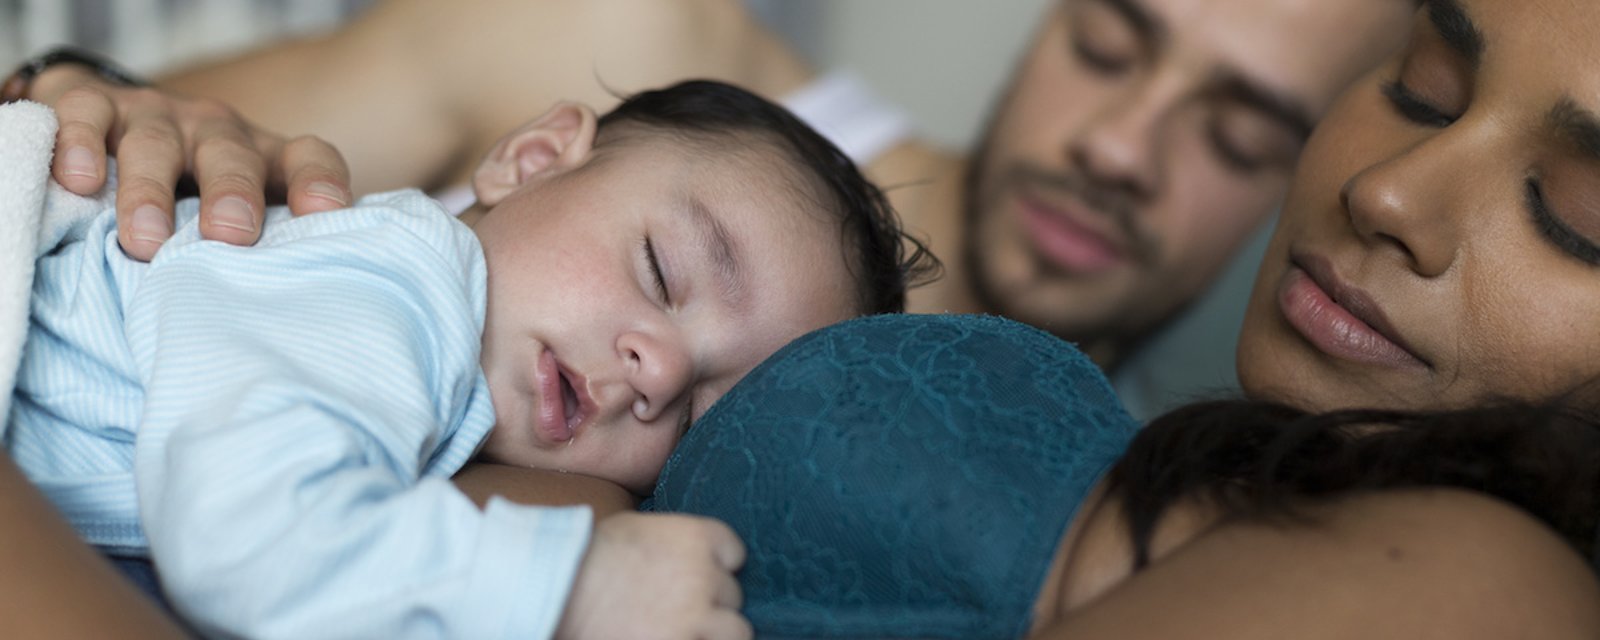 Pendant la première année de vie d’un bébé, ses parents perdent plus de 700 heures de sommeil!